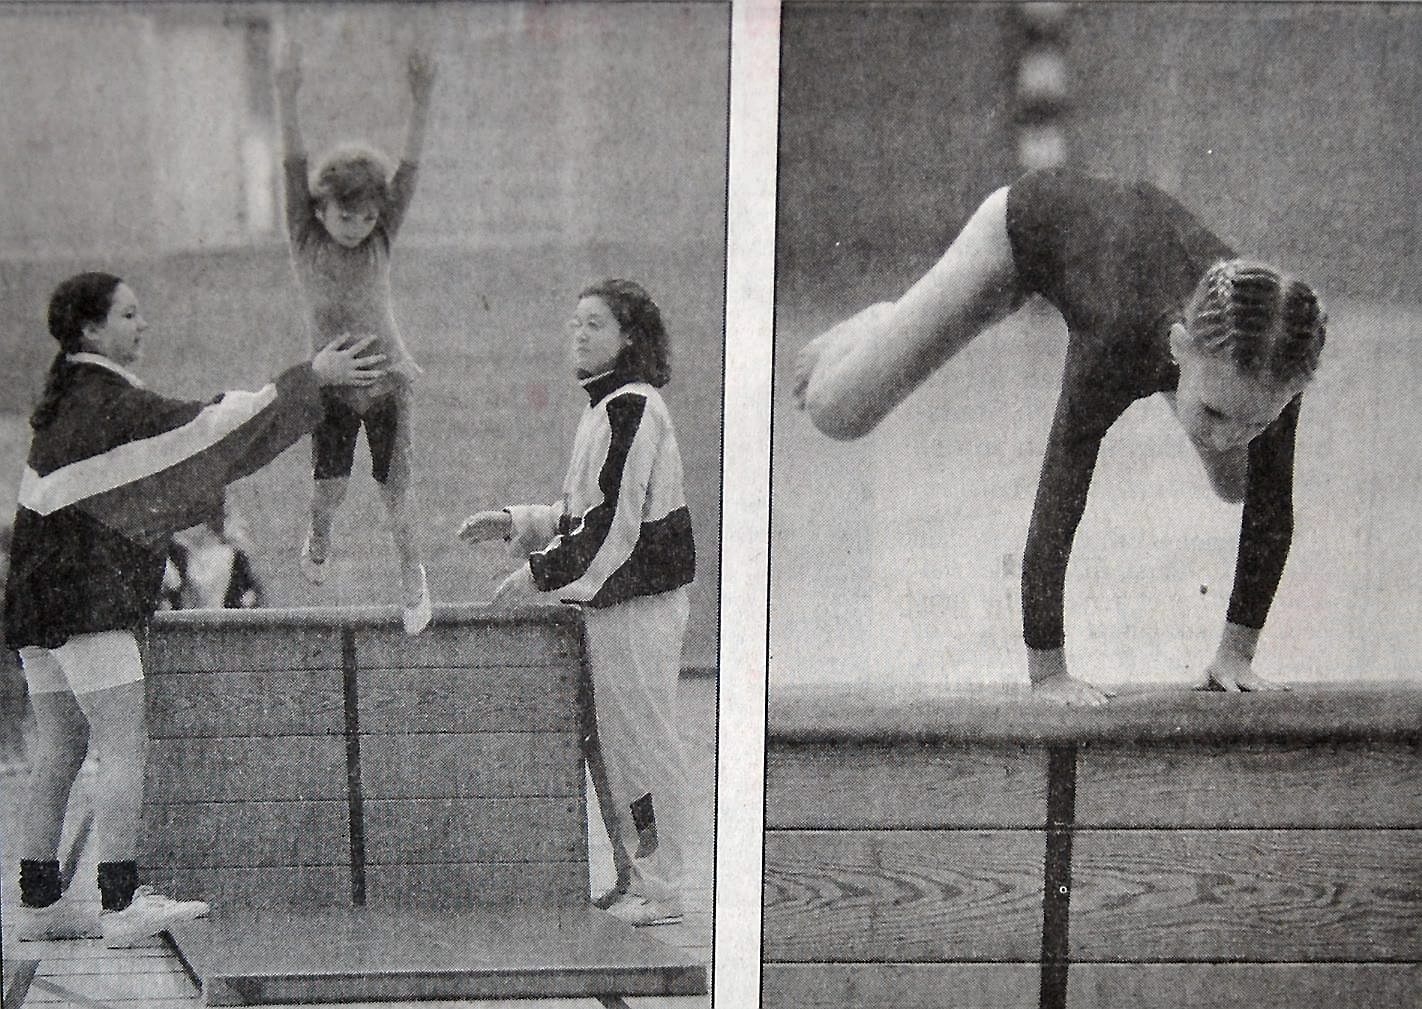 Många duktiga små gymnaster på Örnens uppvisning.
Arkiv: Gugge Nilsson